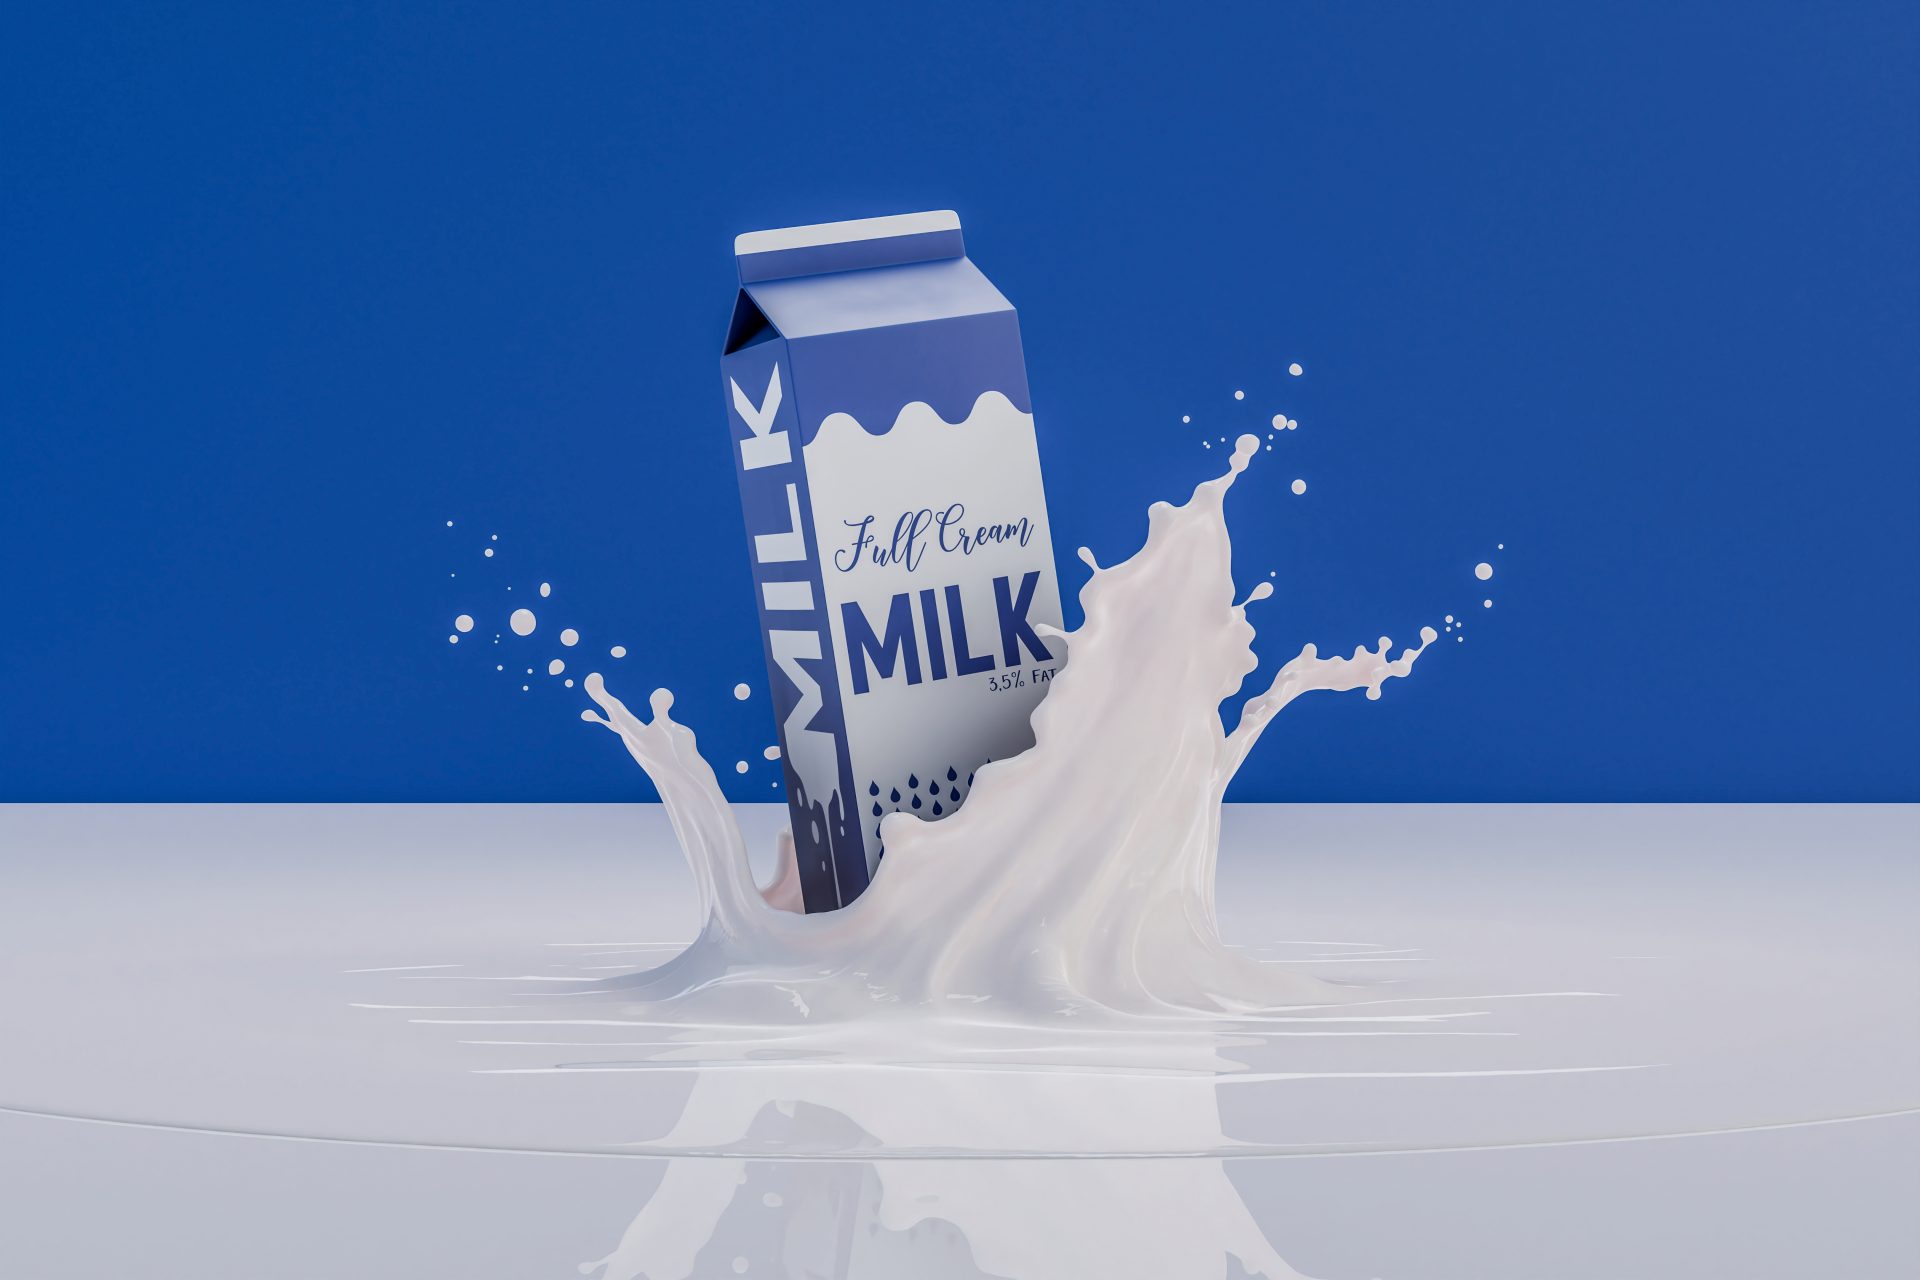 It is not a milk like we know it